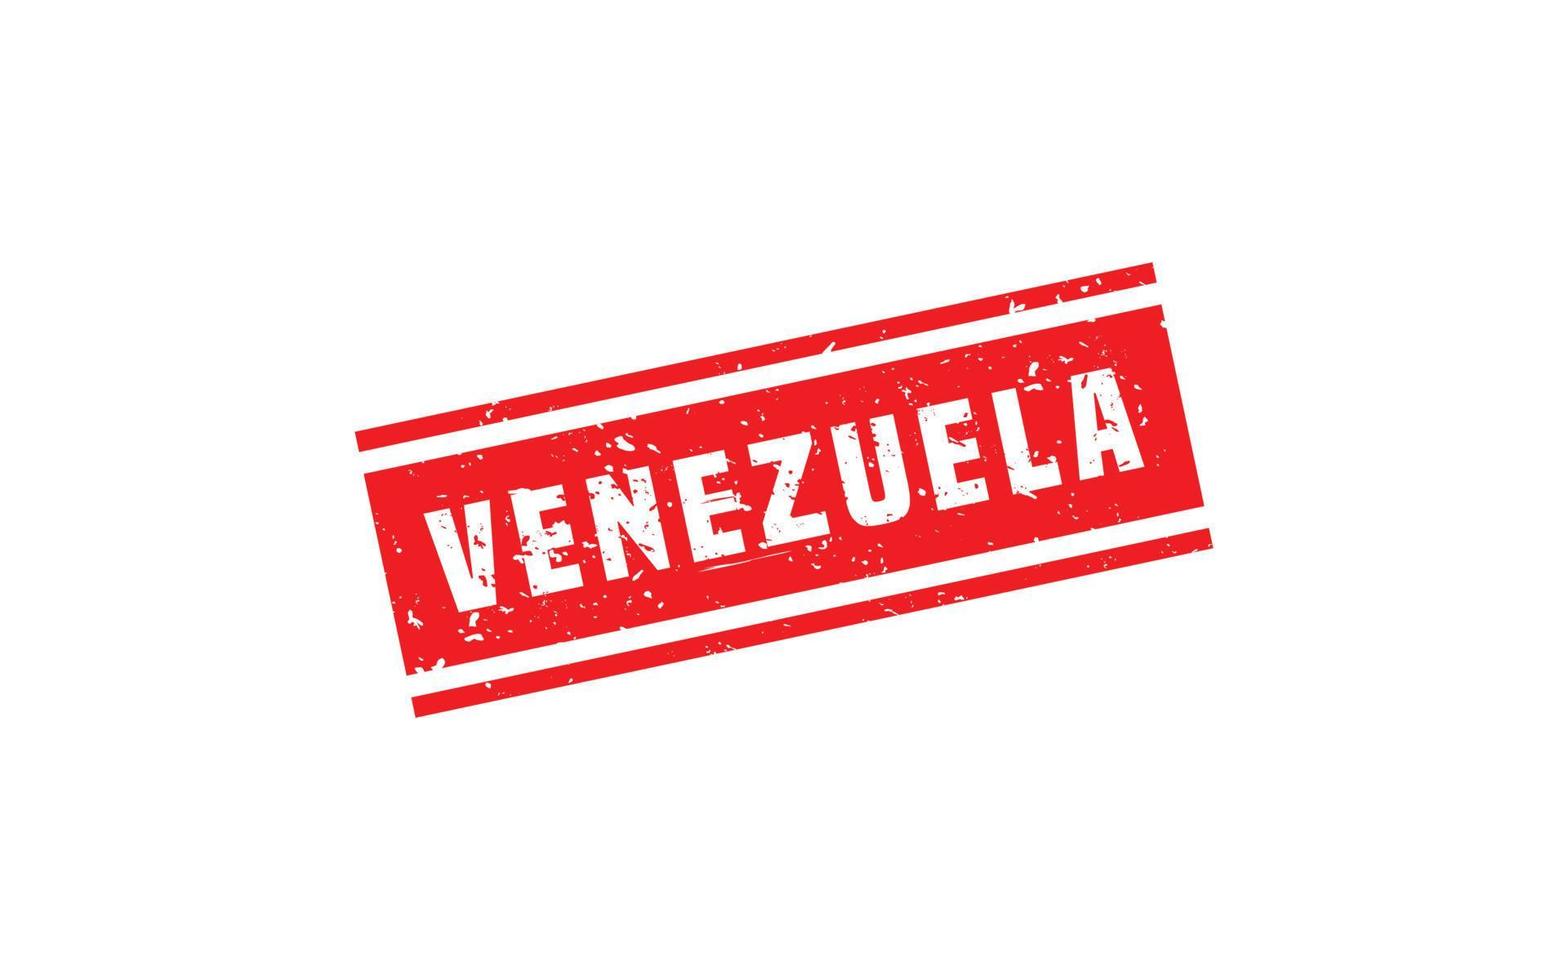 Venezuela Briefmarke Gummi mit Grunge Stil auf Weiß Hintergrund vektor